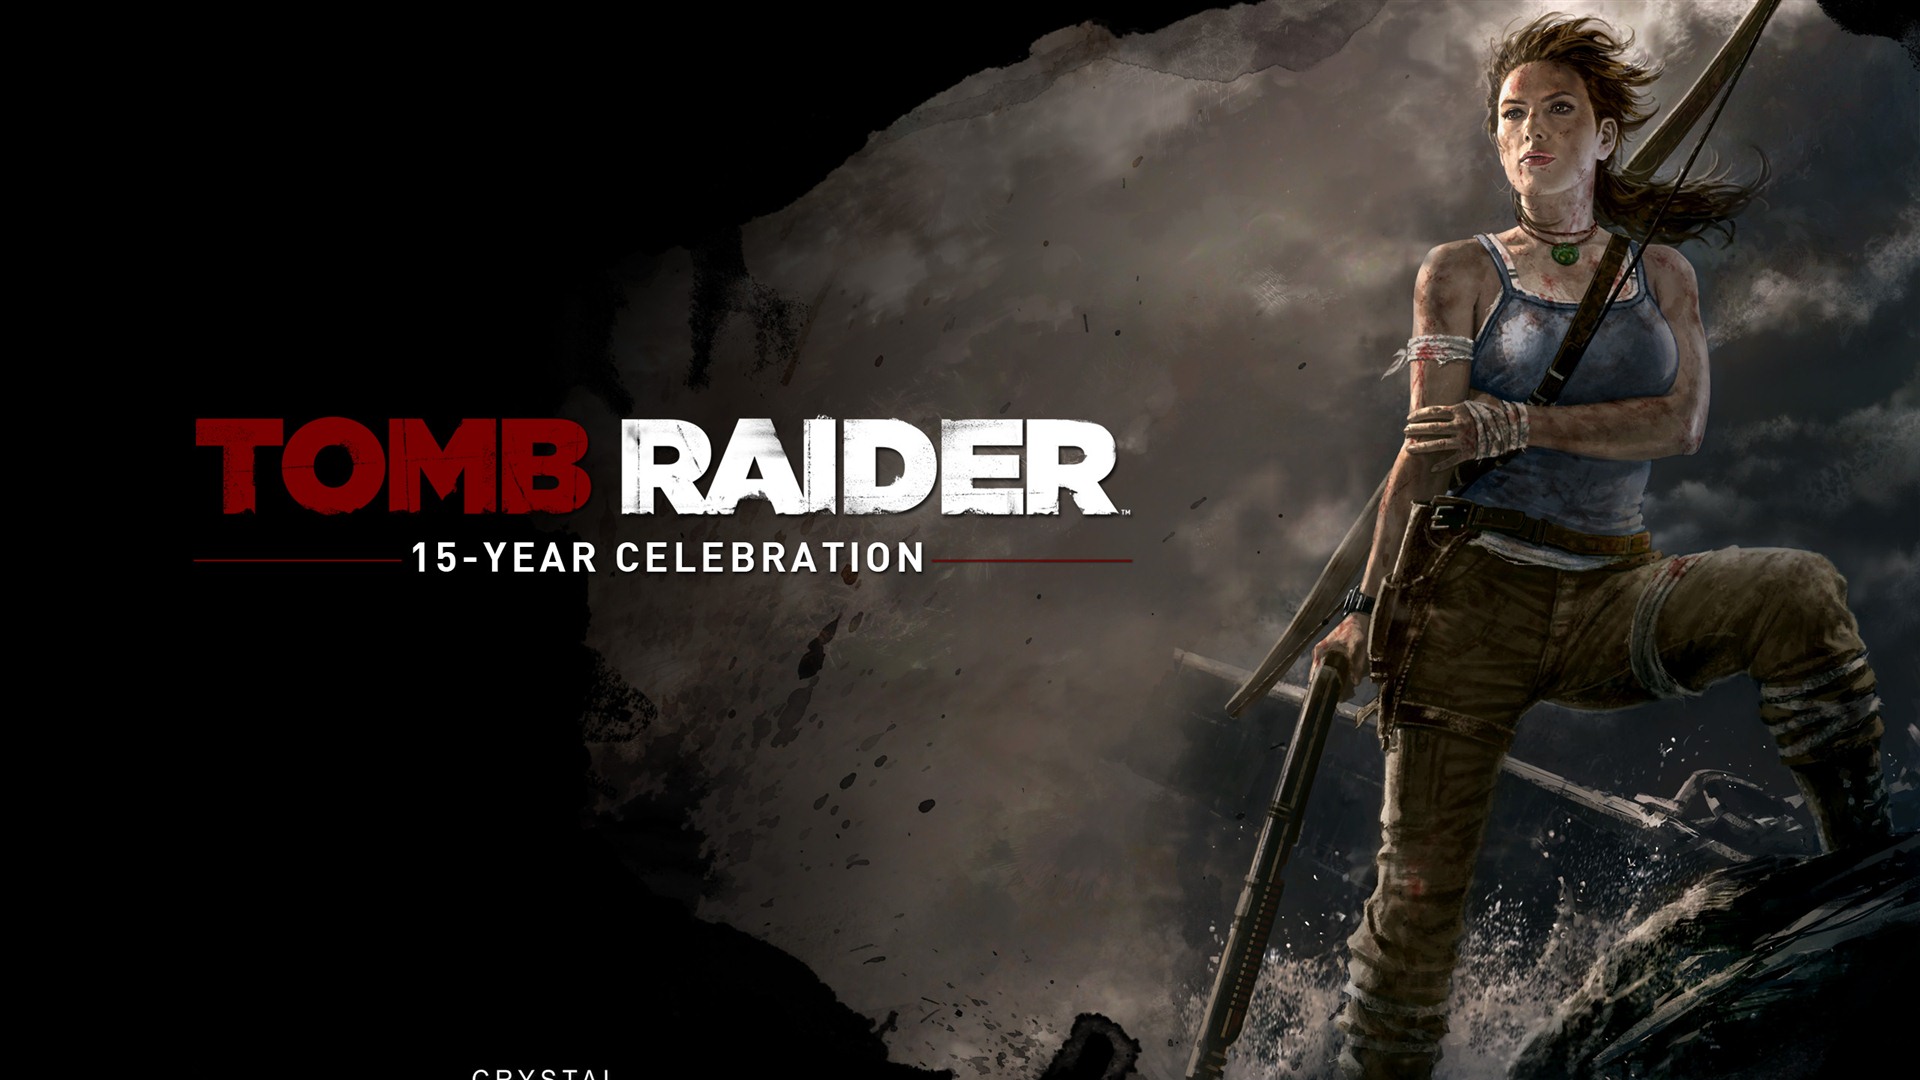 Tomb Raider 15-Year Celebration 古墓丽影15周年纪念版 高清壁纸1 - 1920x1080